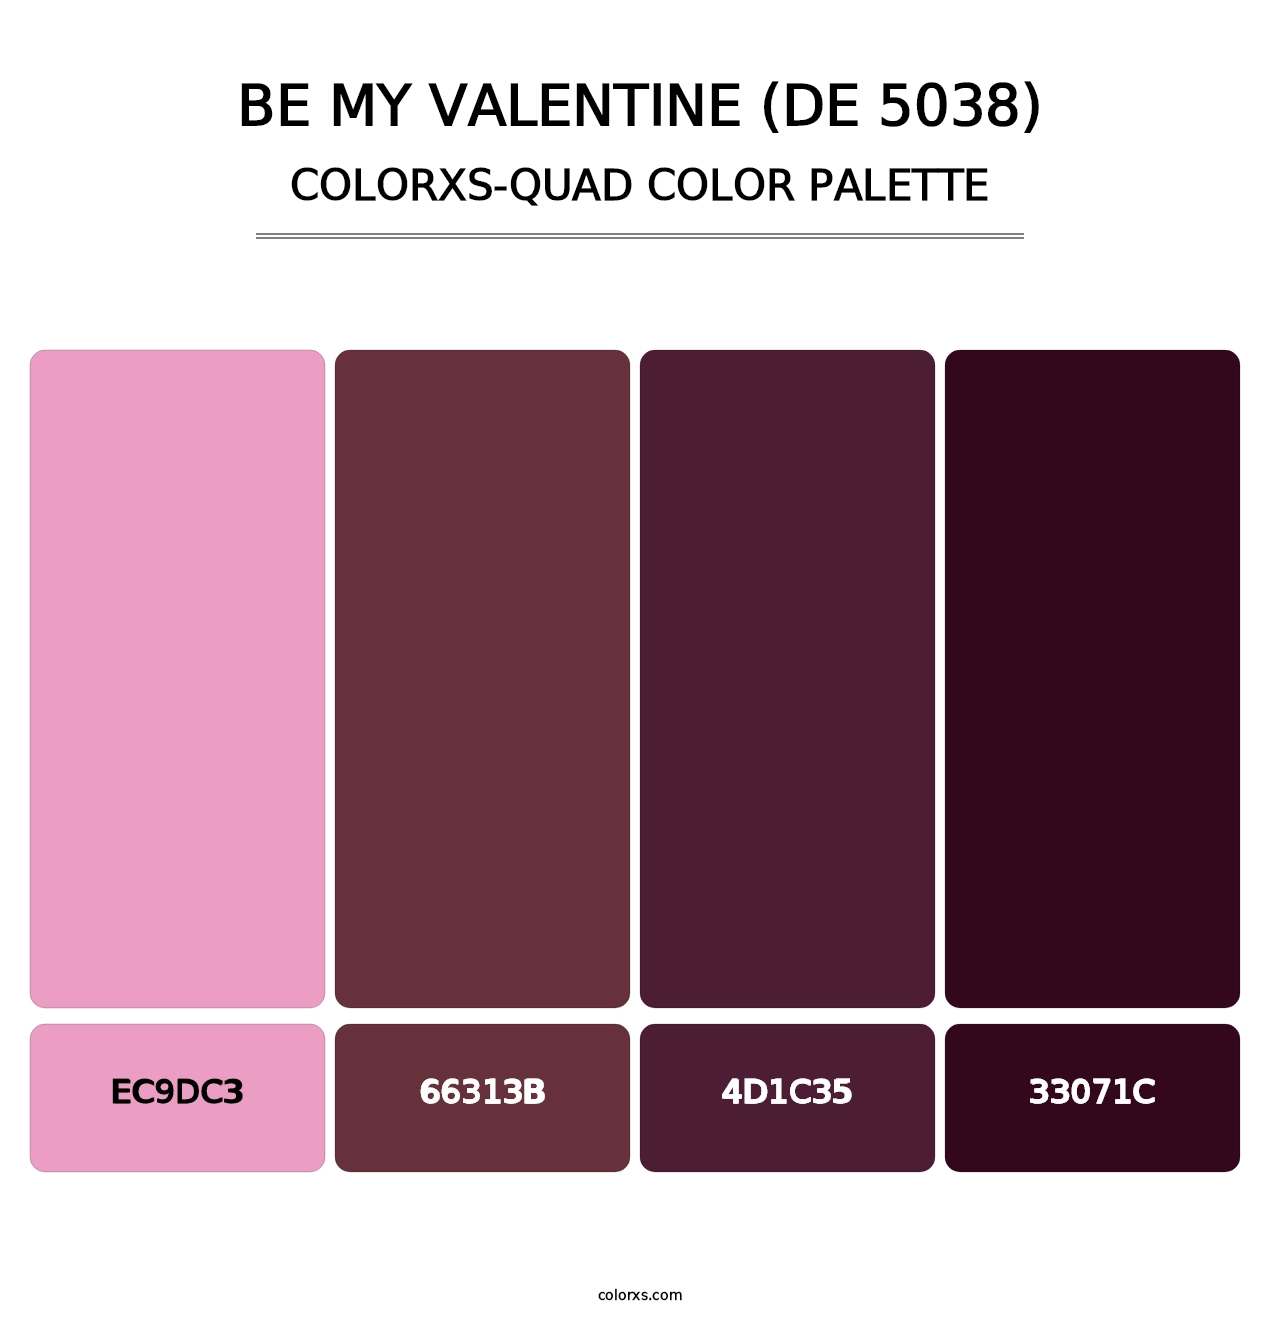 Be My Valentine (DE 5038) - Colorxs Quad Palette